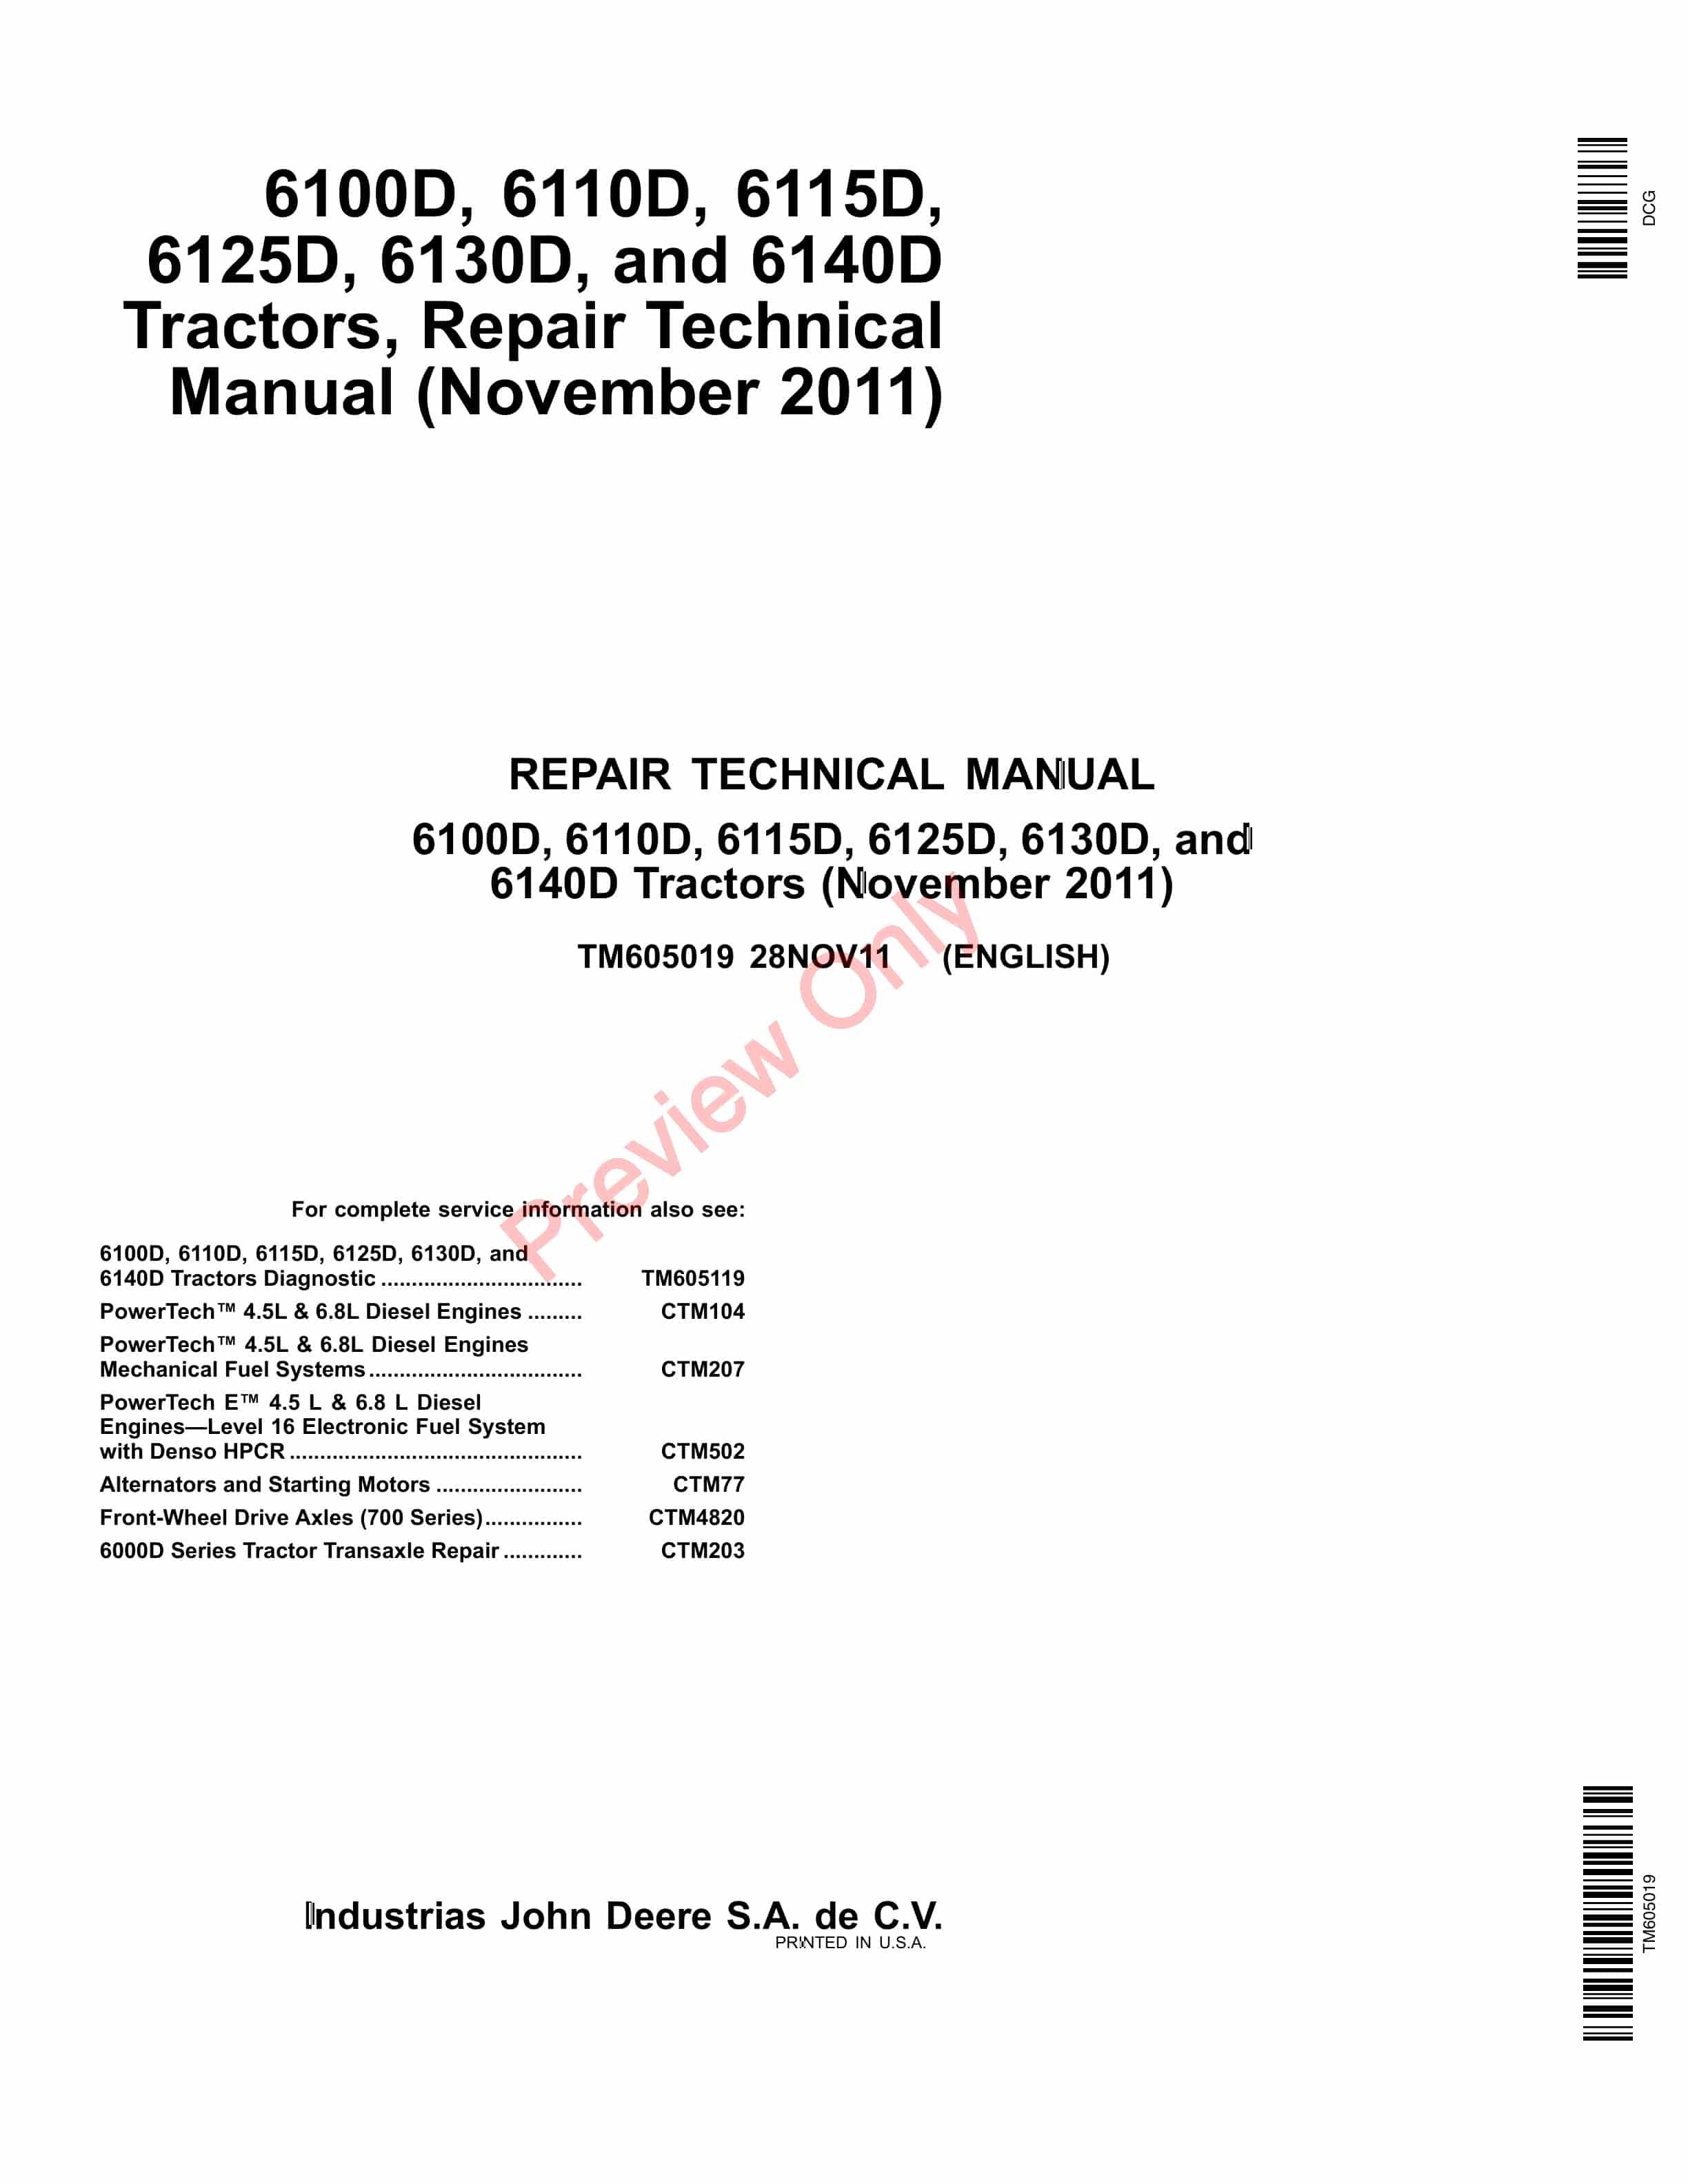 John Deere 6100D 6110D 6115D 6125D 6130D and 6140D Tractor Repair Technical Manual TM605019 28NOV11 PDF